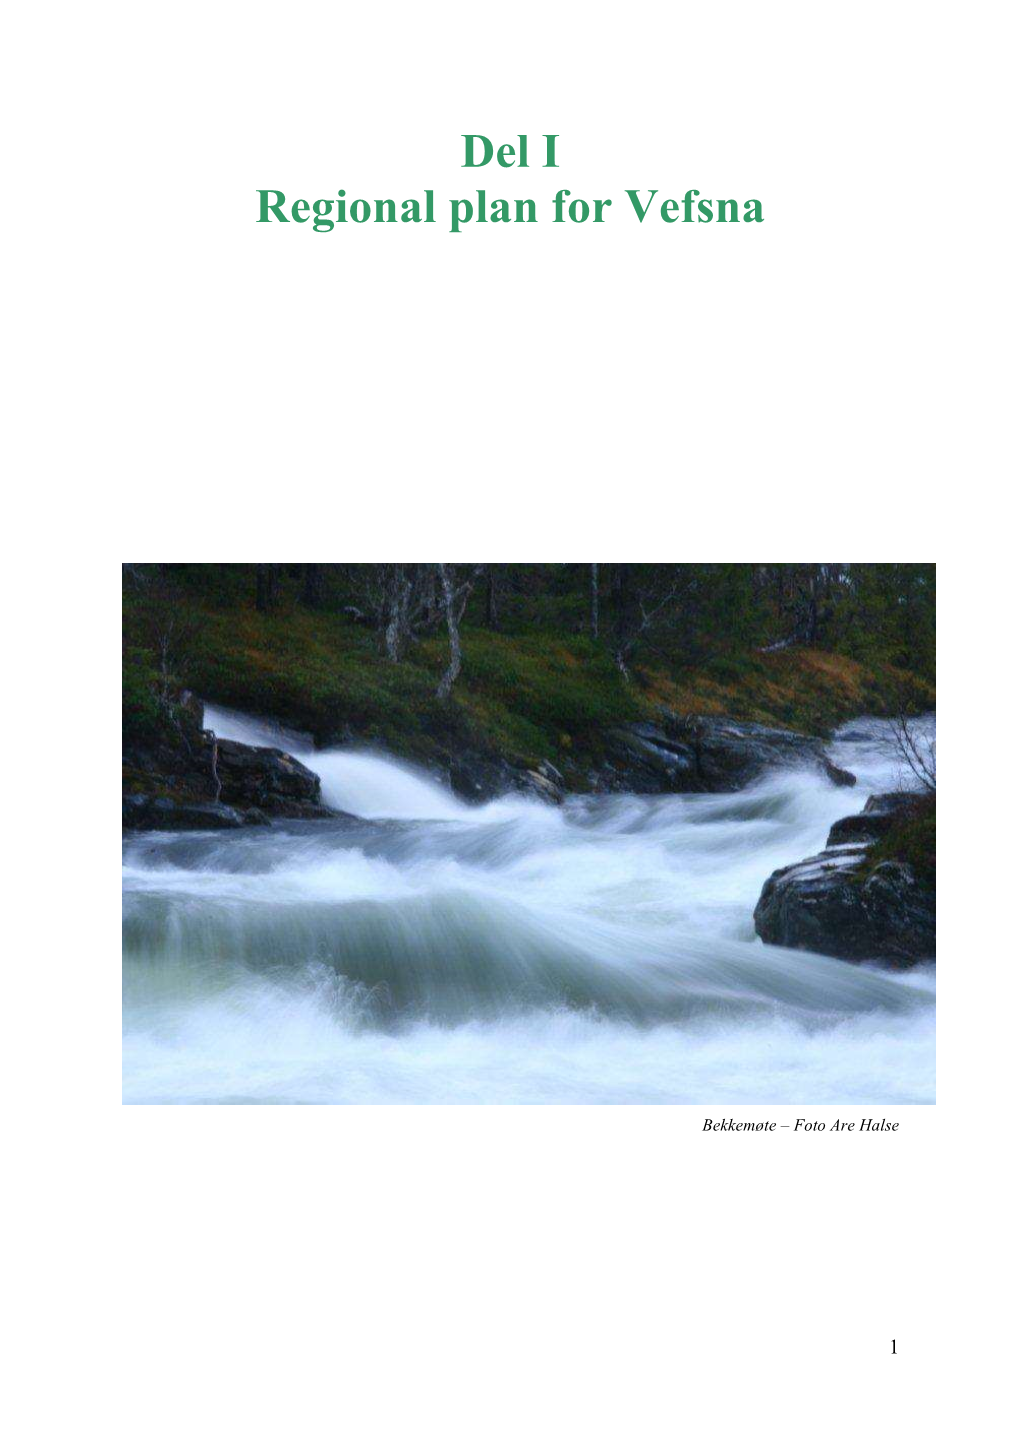 Del I Regional Plan for Vefsna